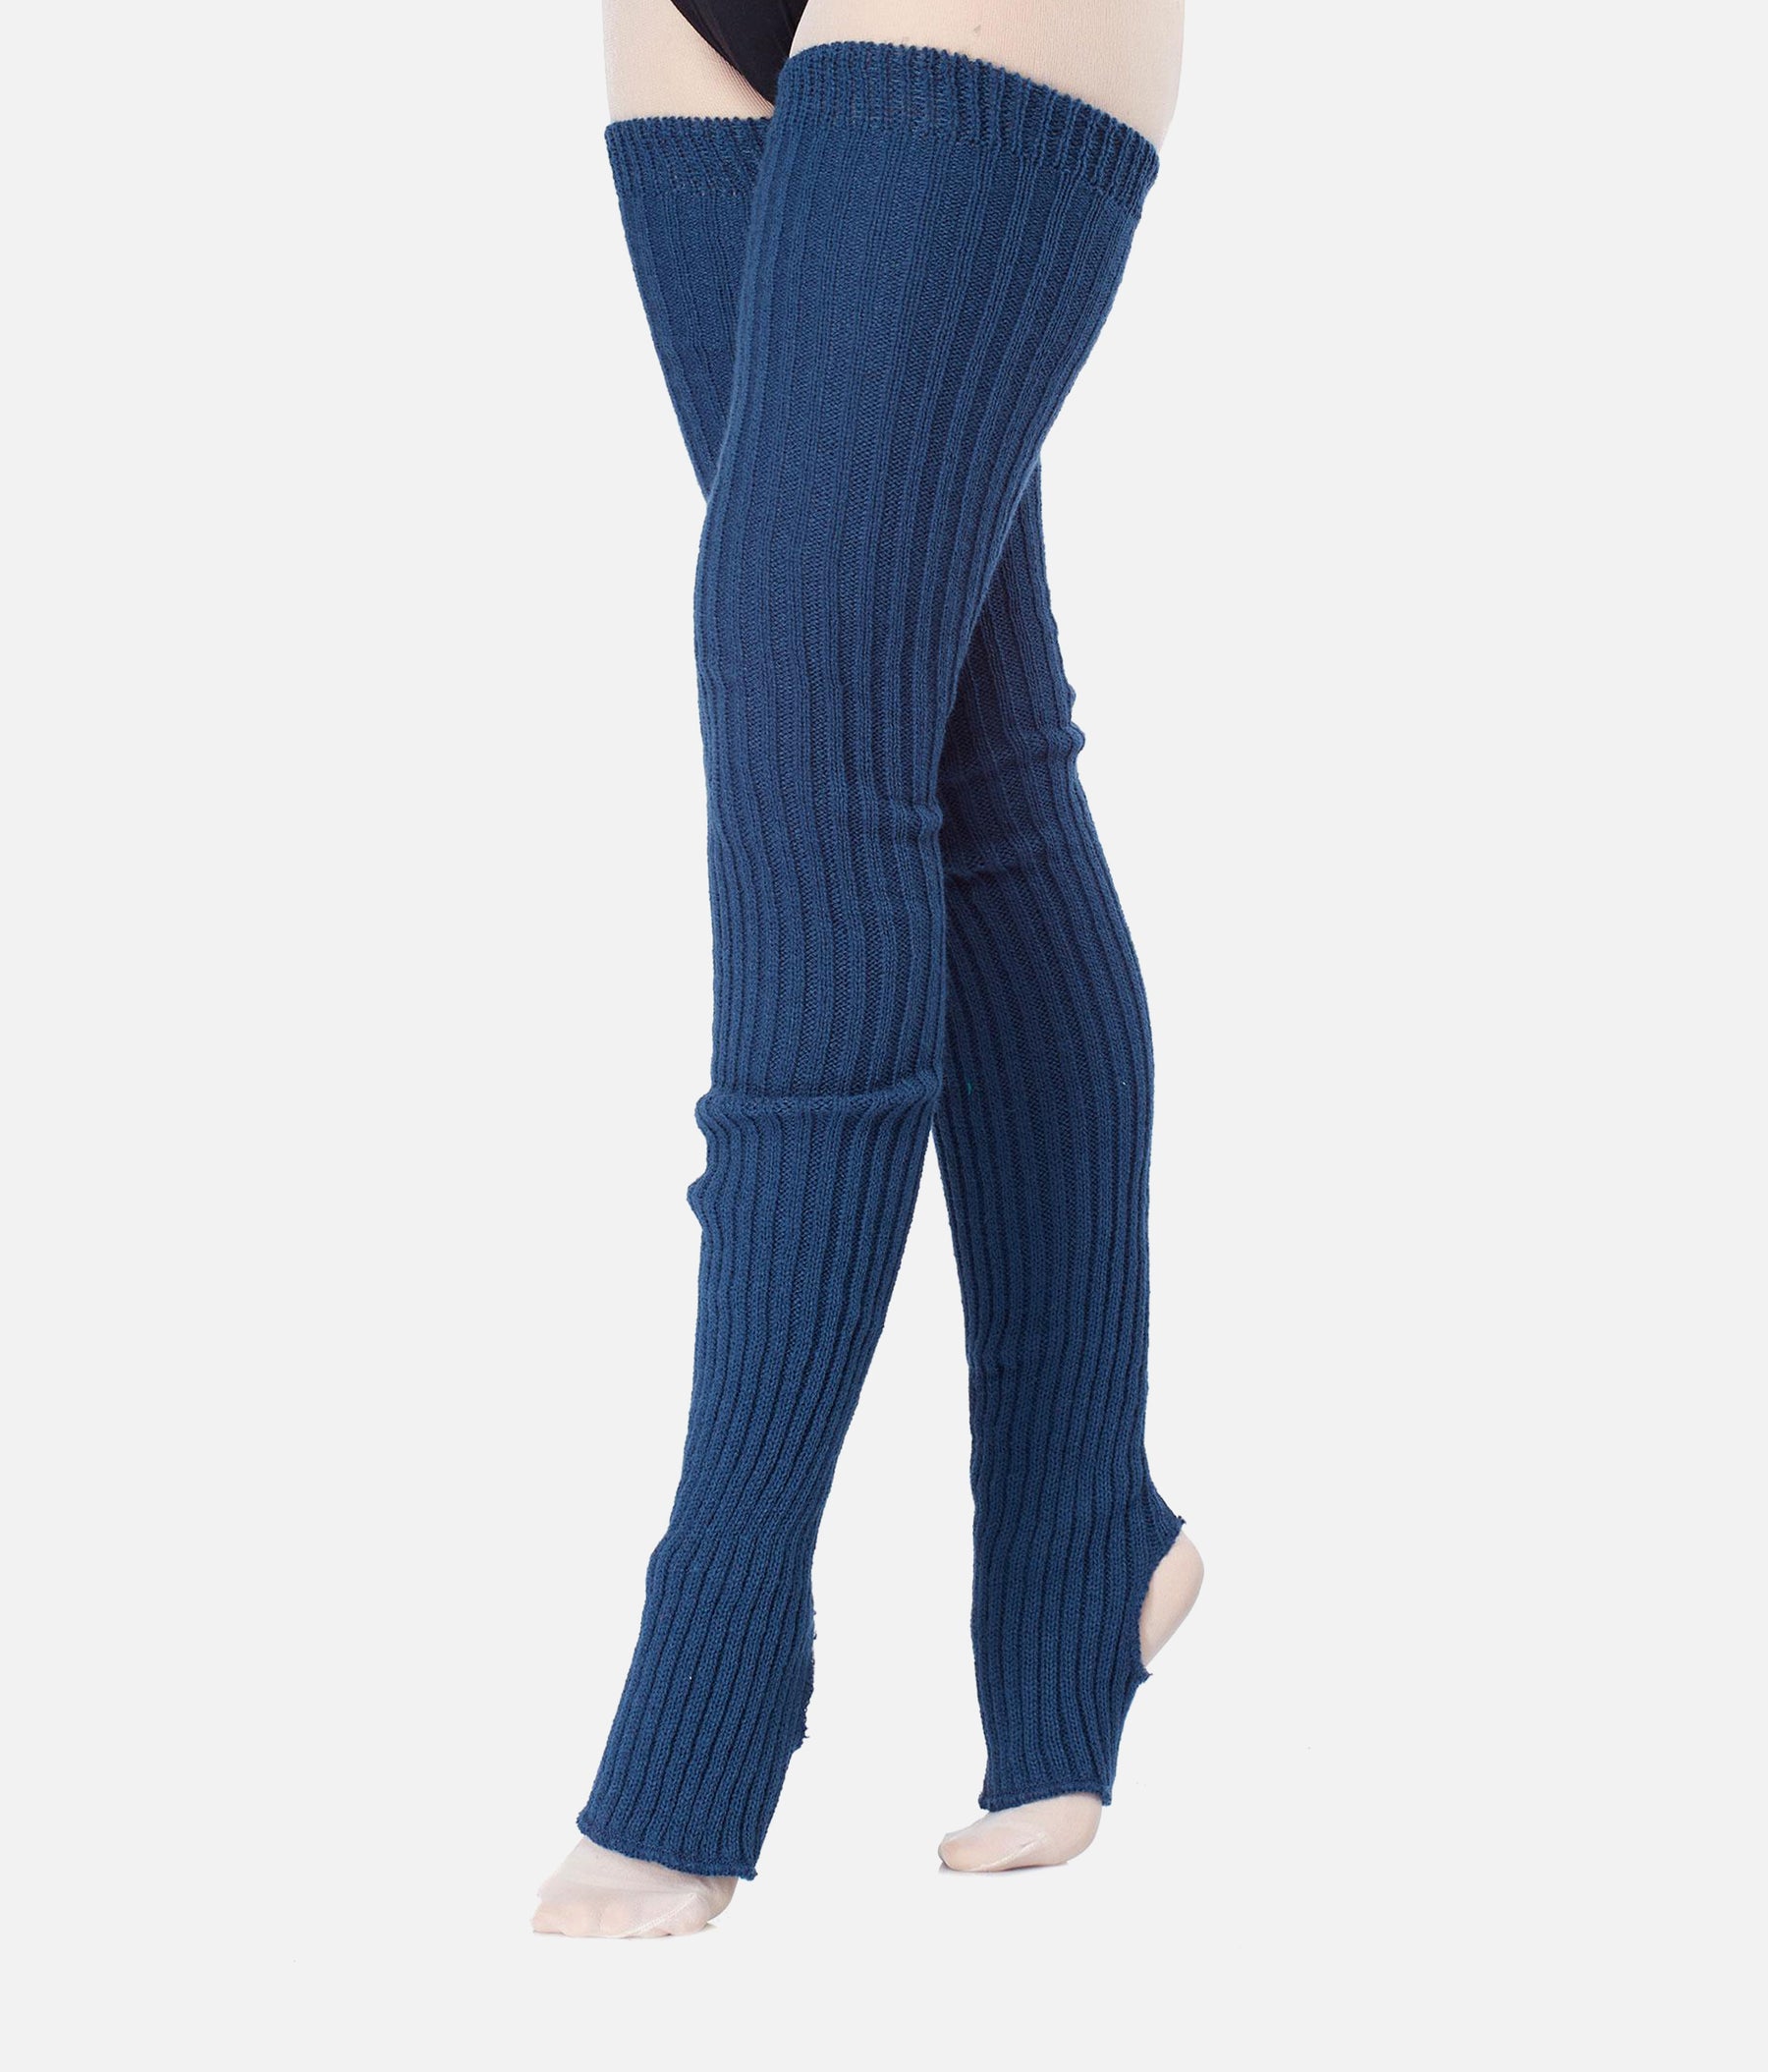 Maxical knit stirrup Long Legwarmers - 2020